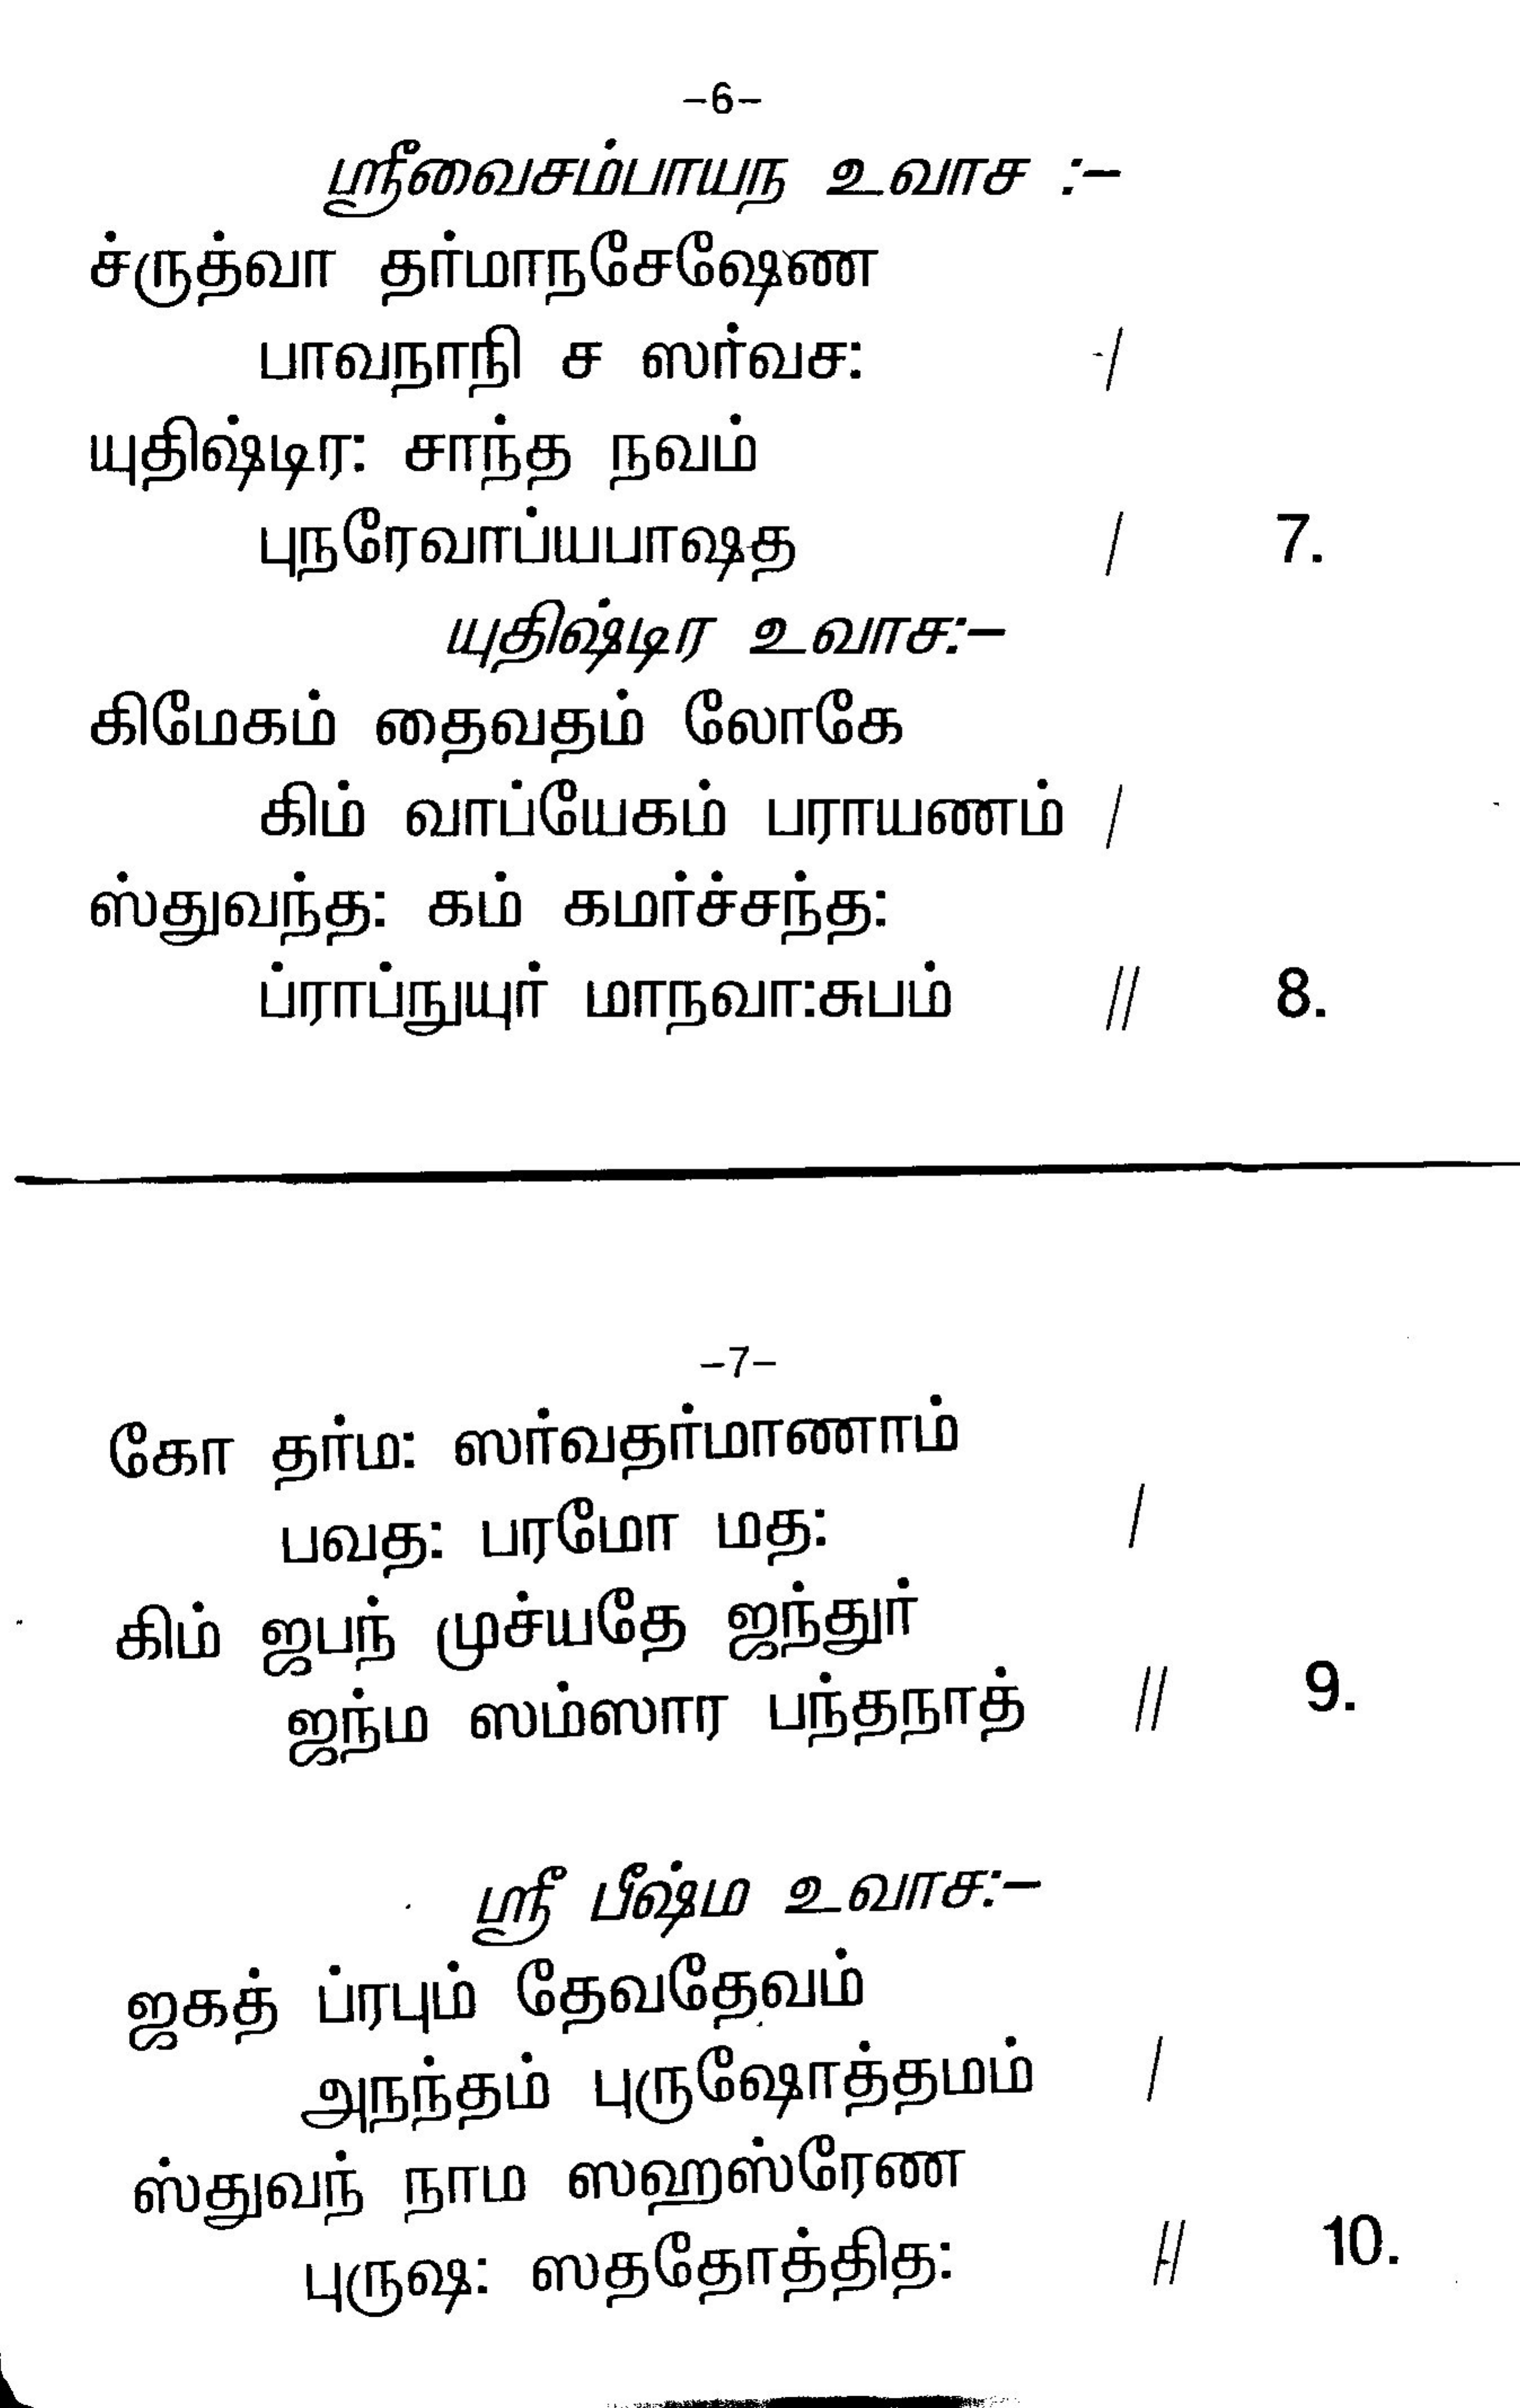 vishnu sahasranamam lyrics in tamil pdf